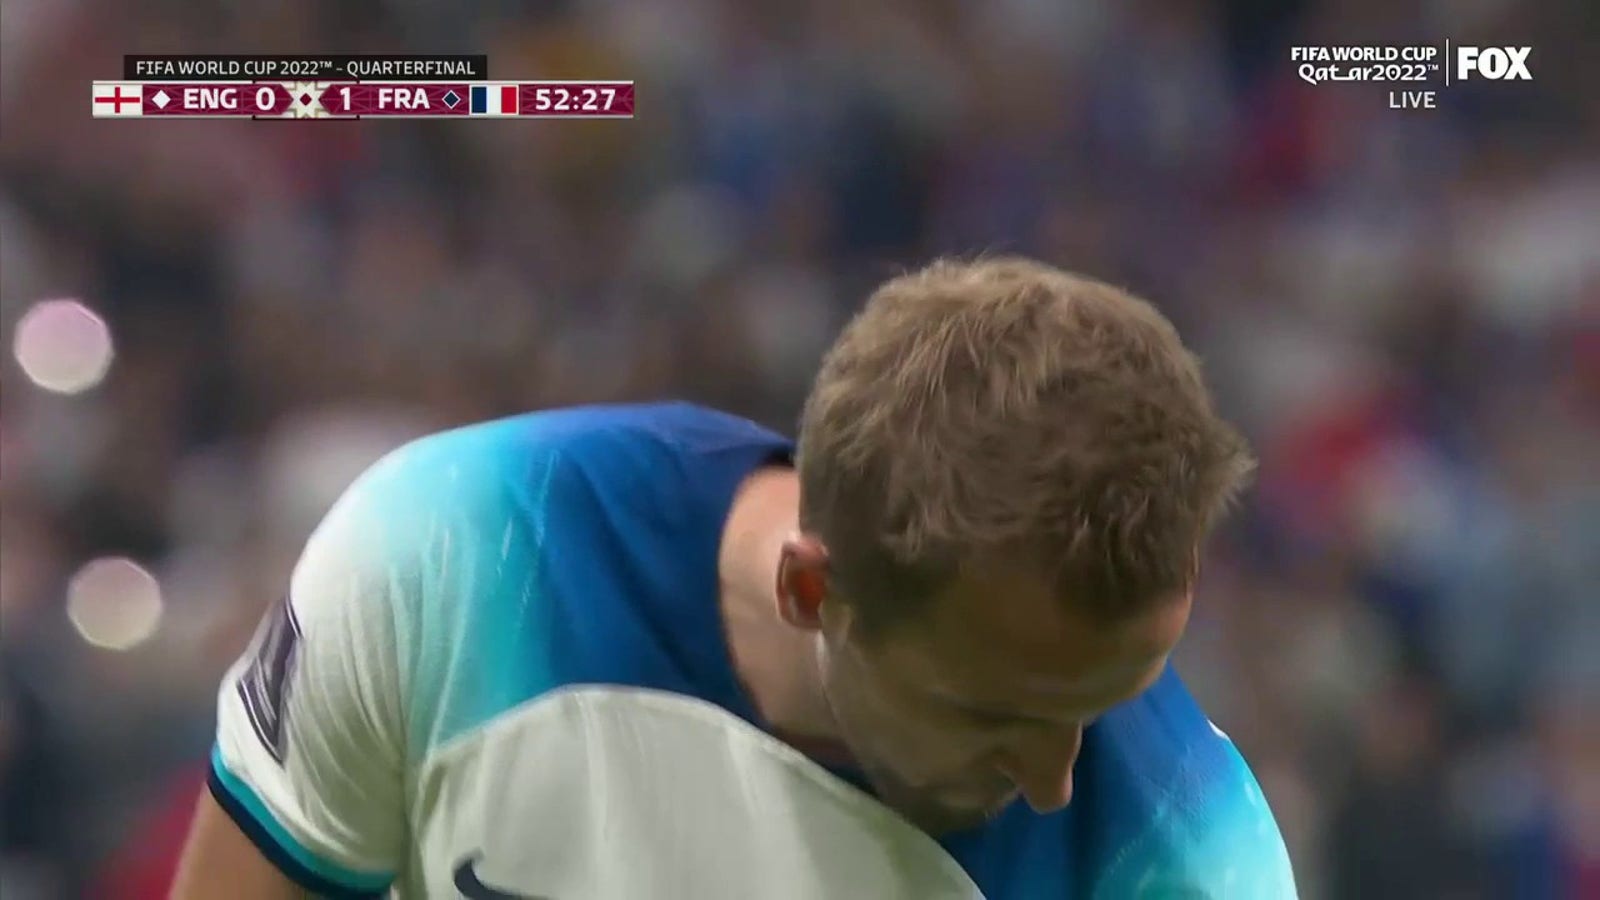 England's Harry Kane scores goal vs. France in 52'